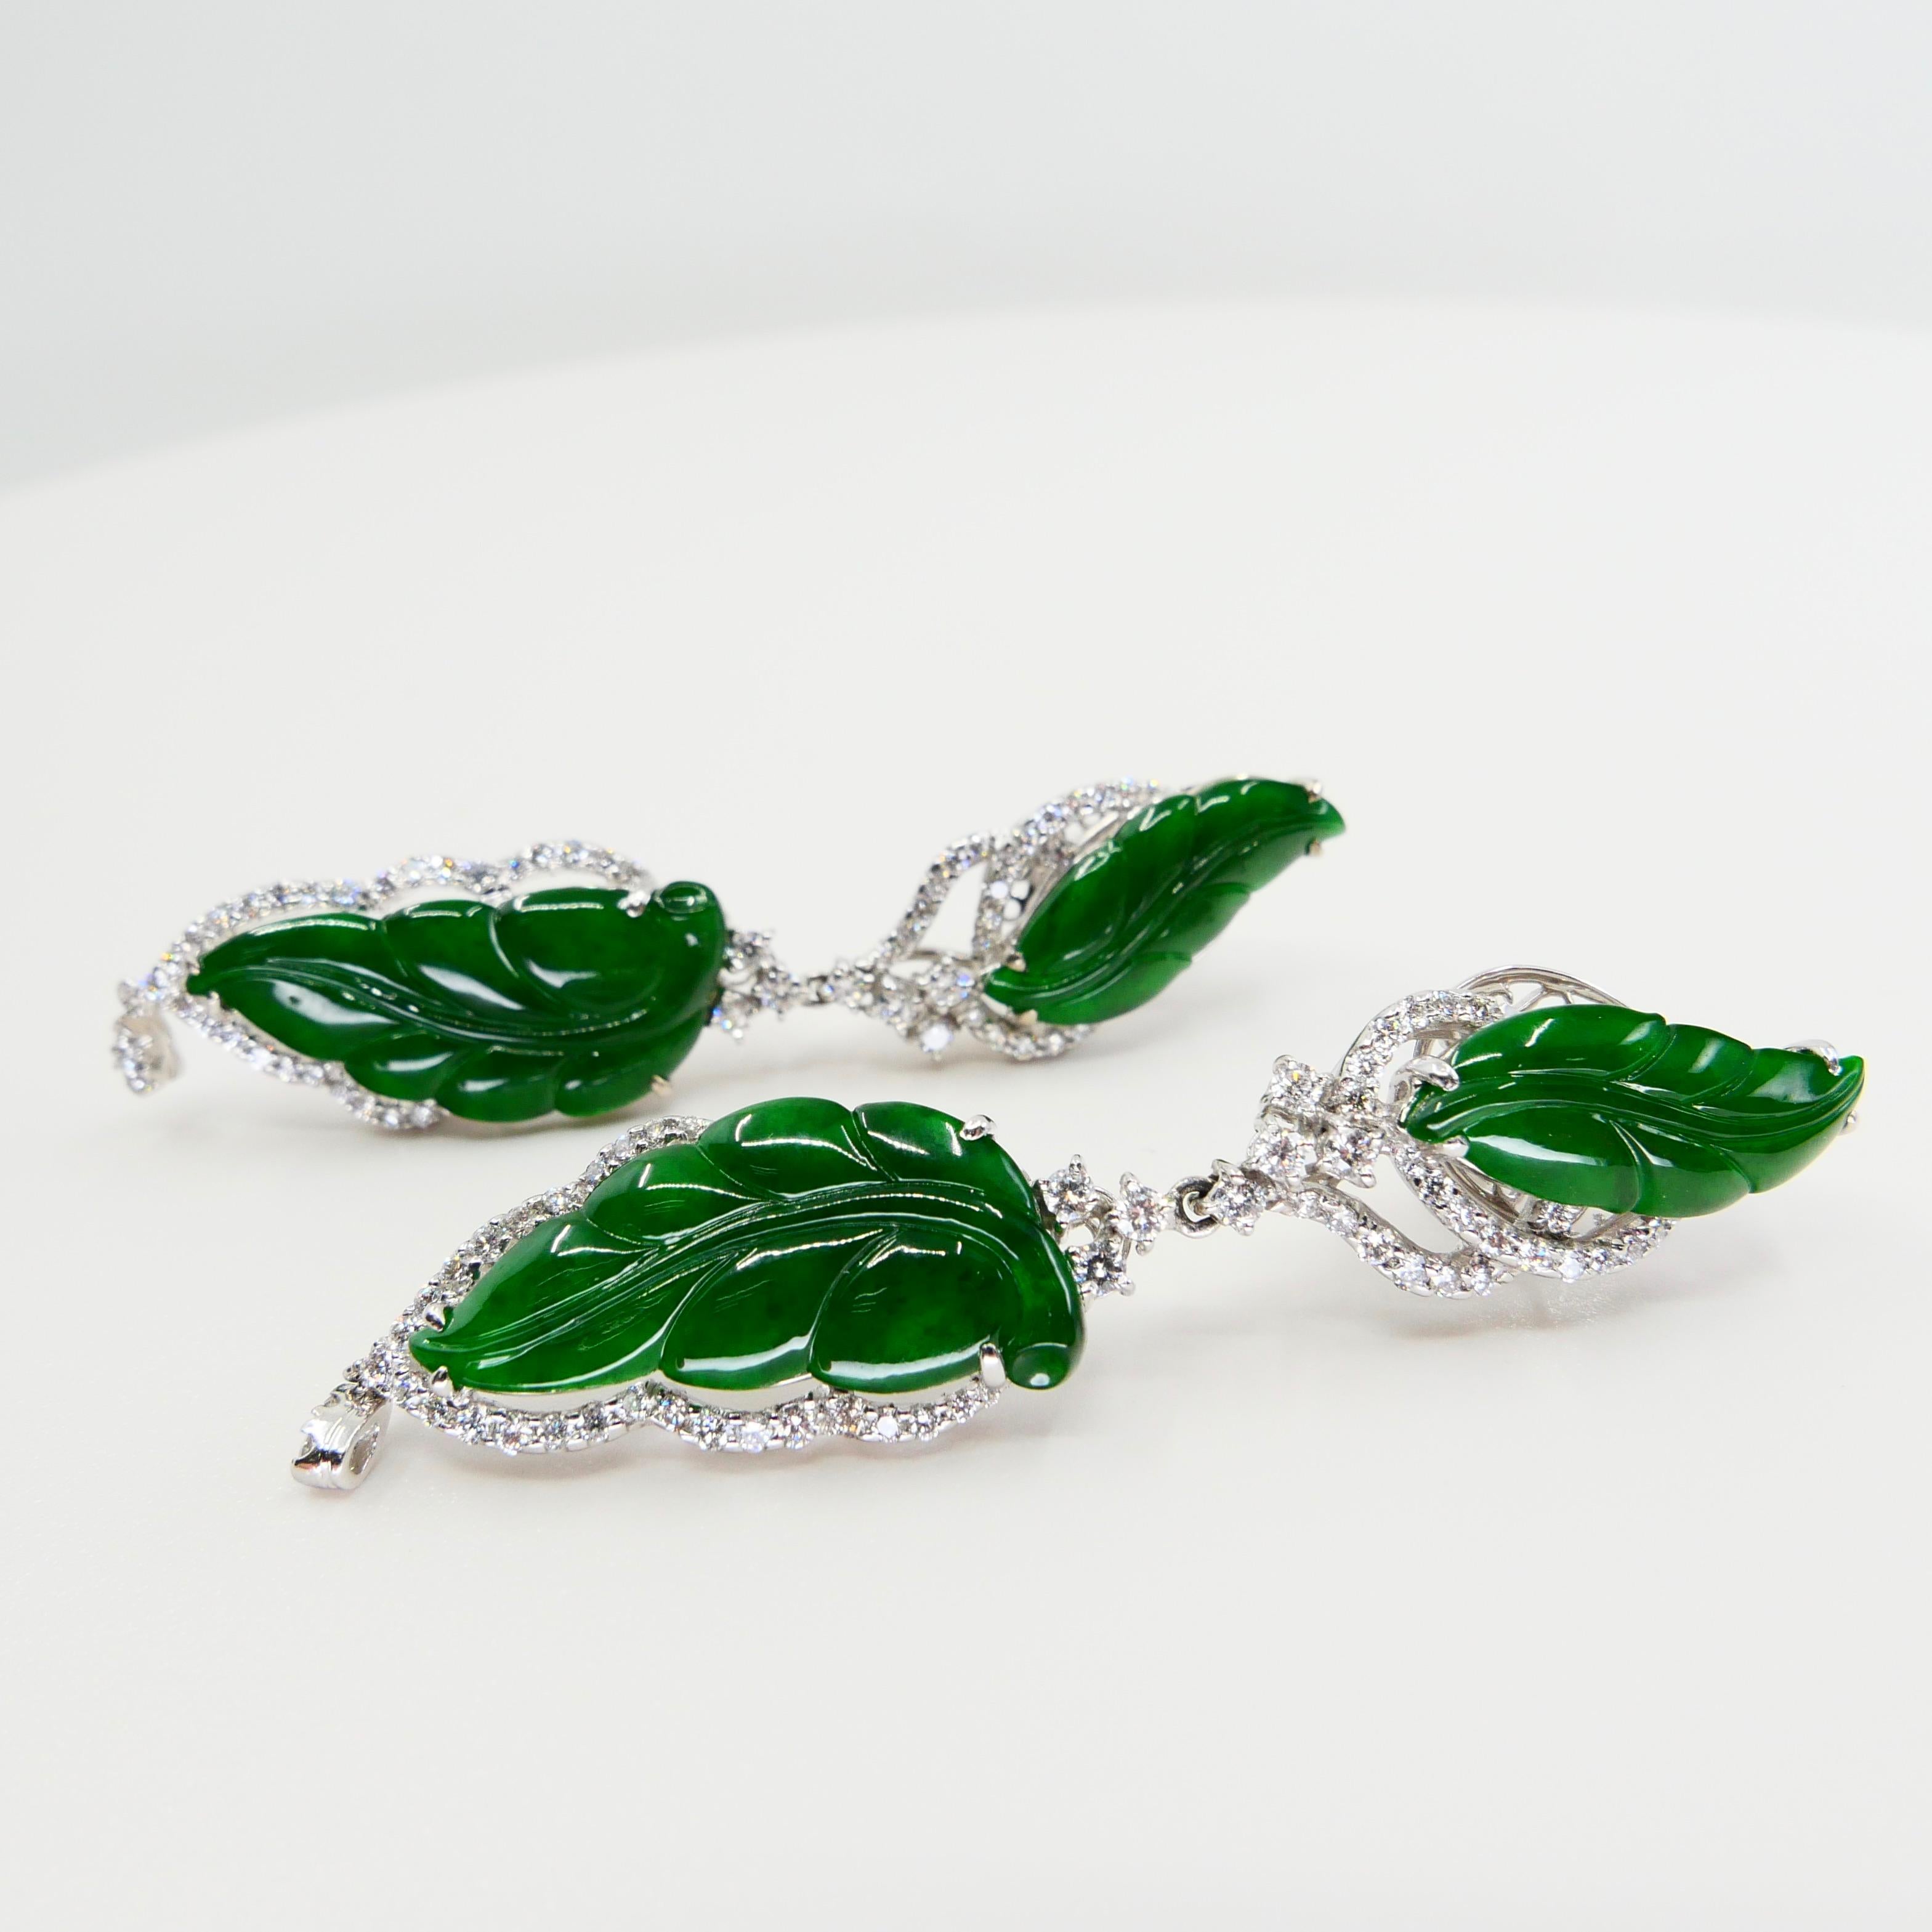 Rough Cut Vintage Certified Jadeite Jade and Diamond Drop Earrings, Intense Imperial Green